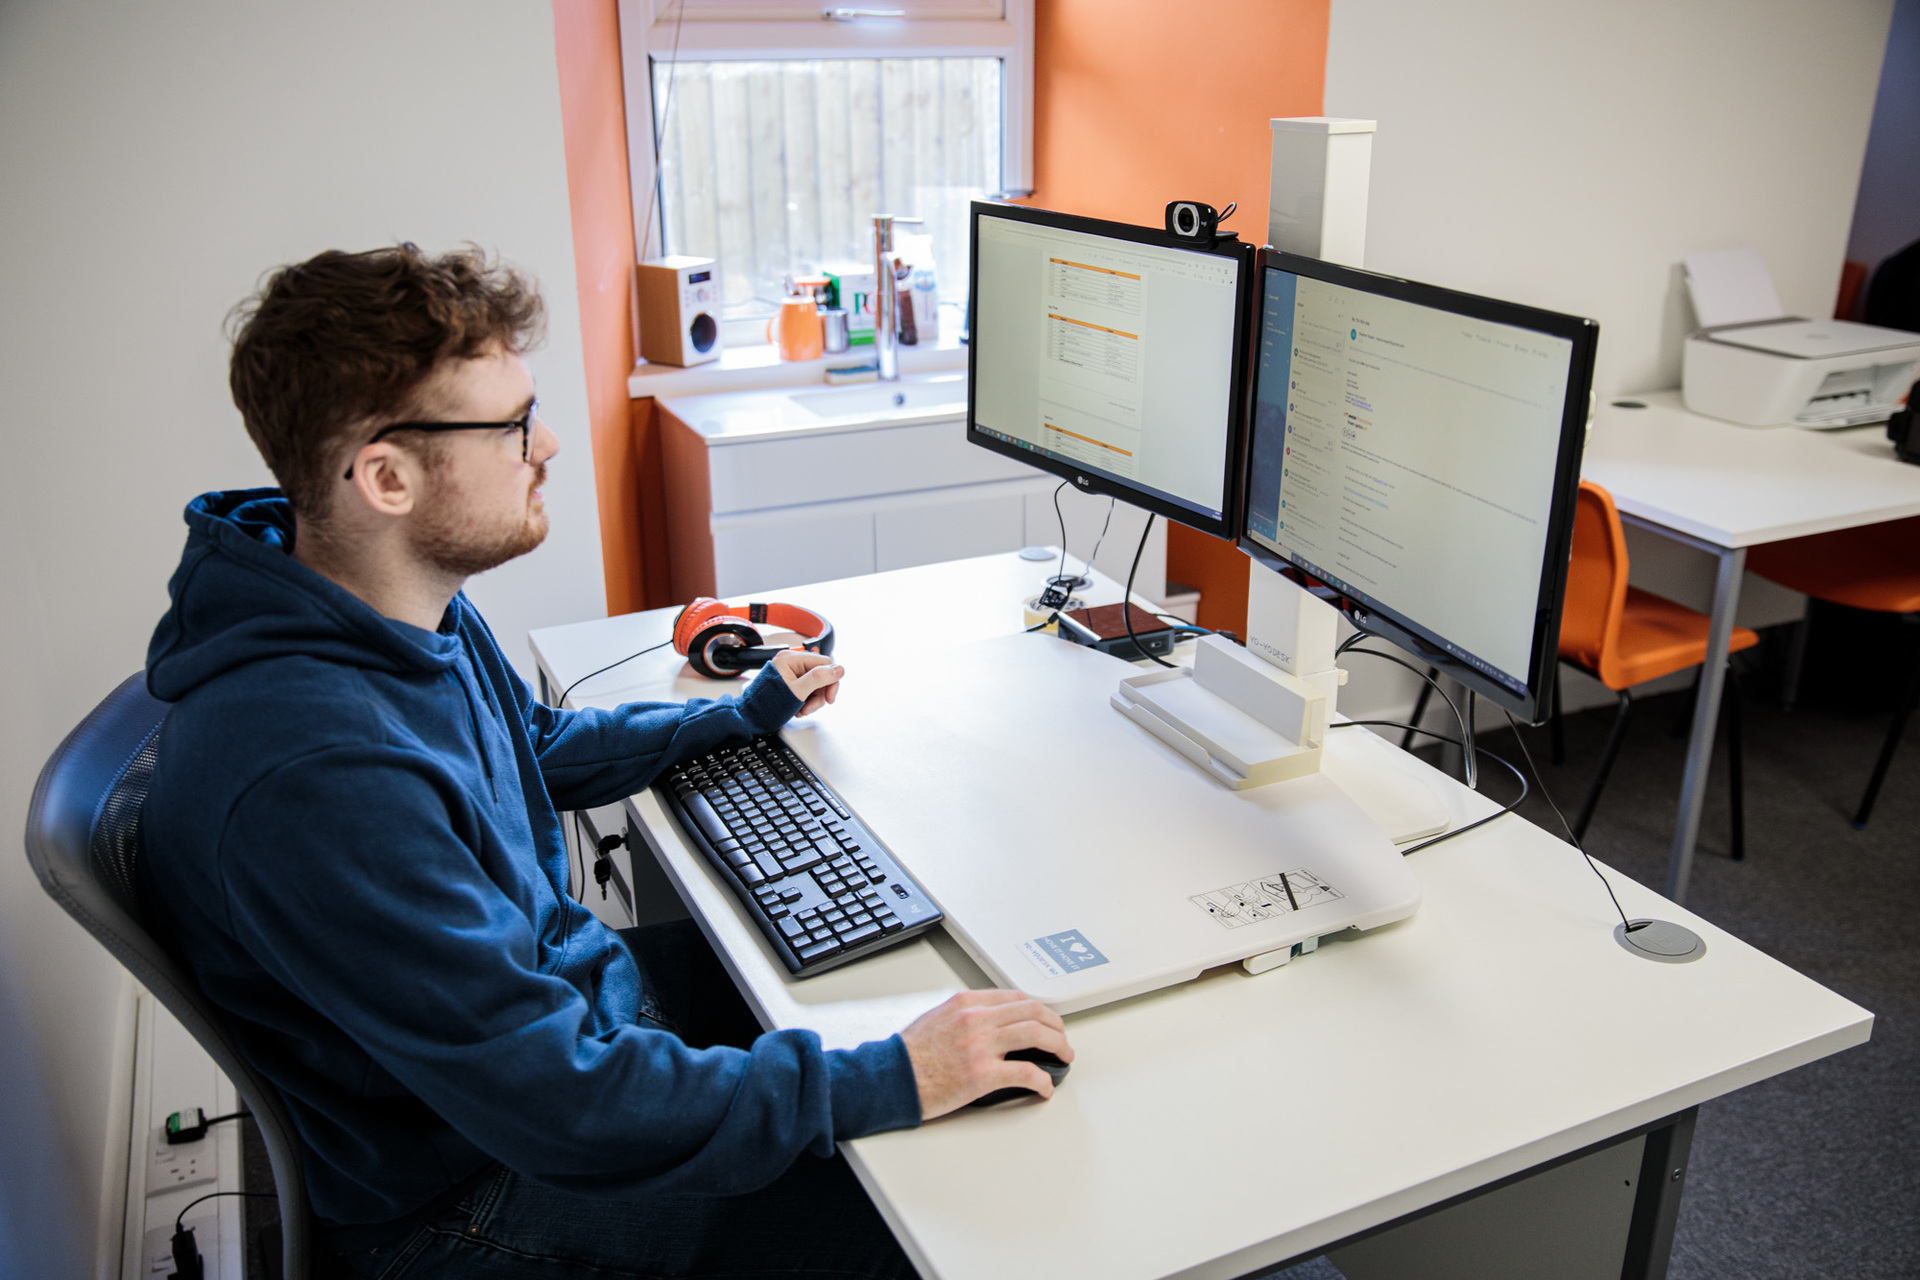 A man sat at a desktop computer working